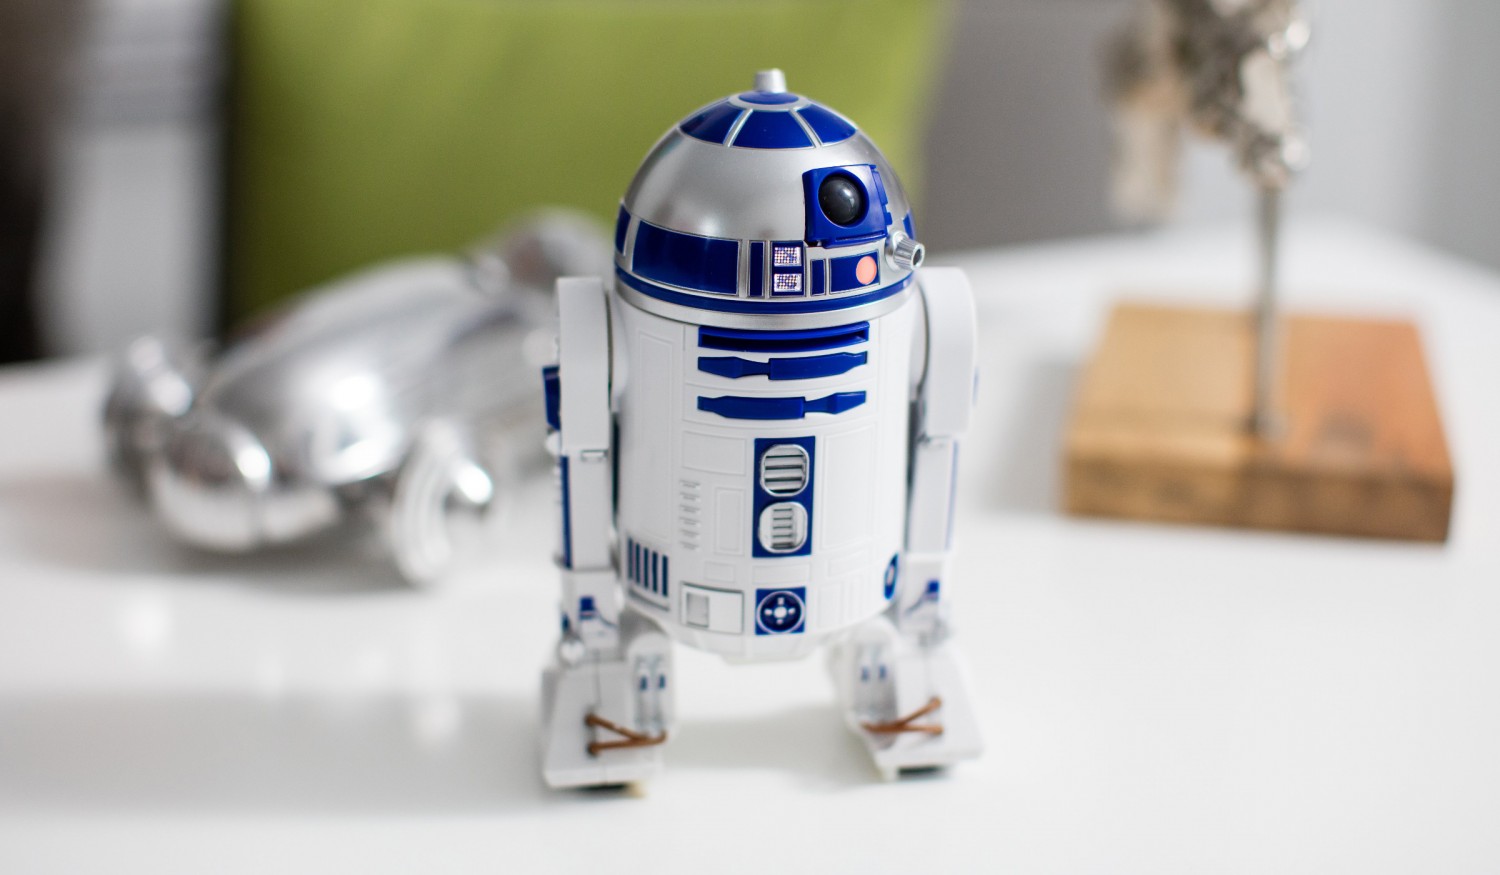 Seznamte se s R2-D2 - droidem ovládaným aplikací